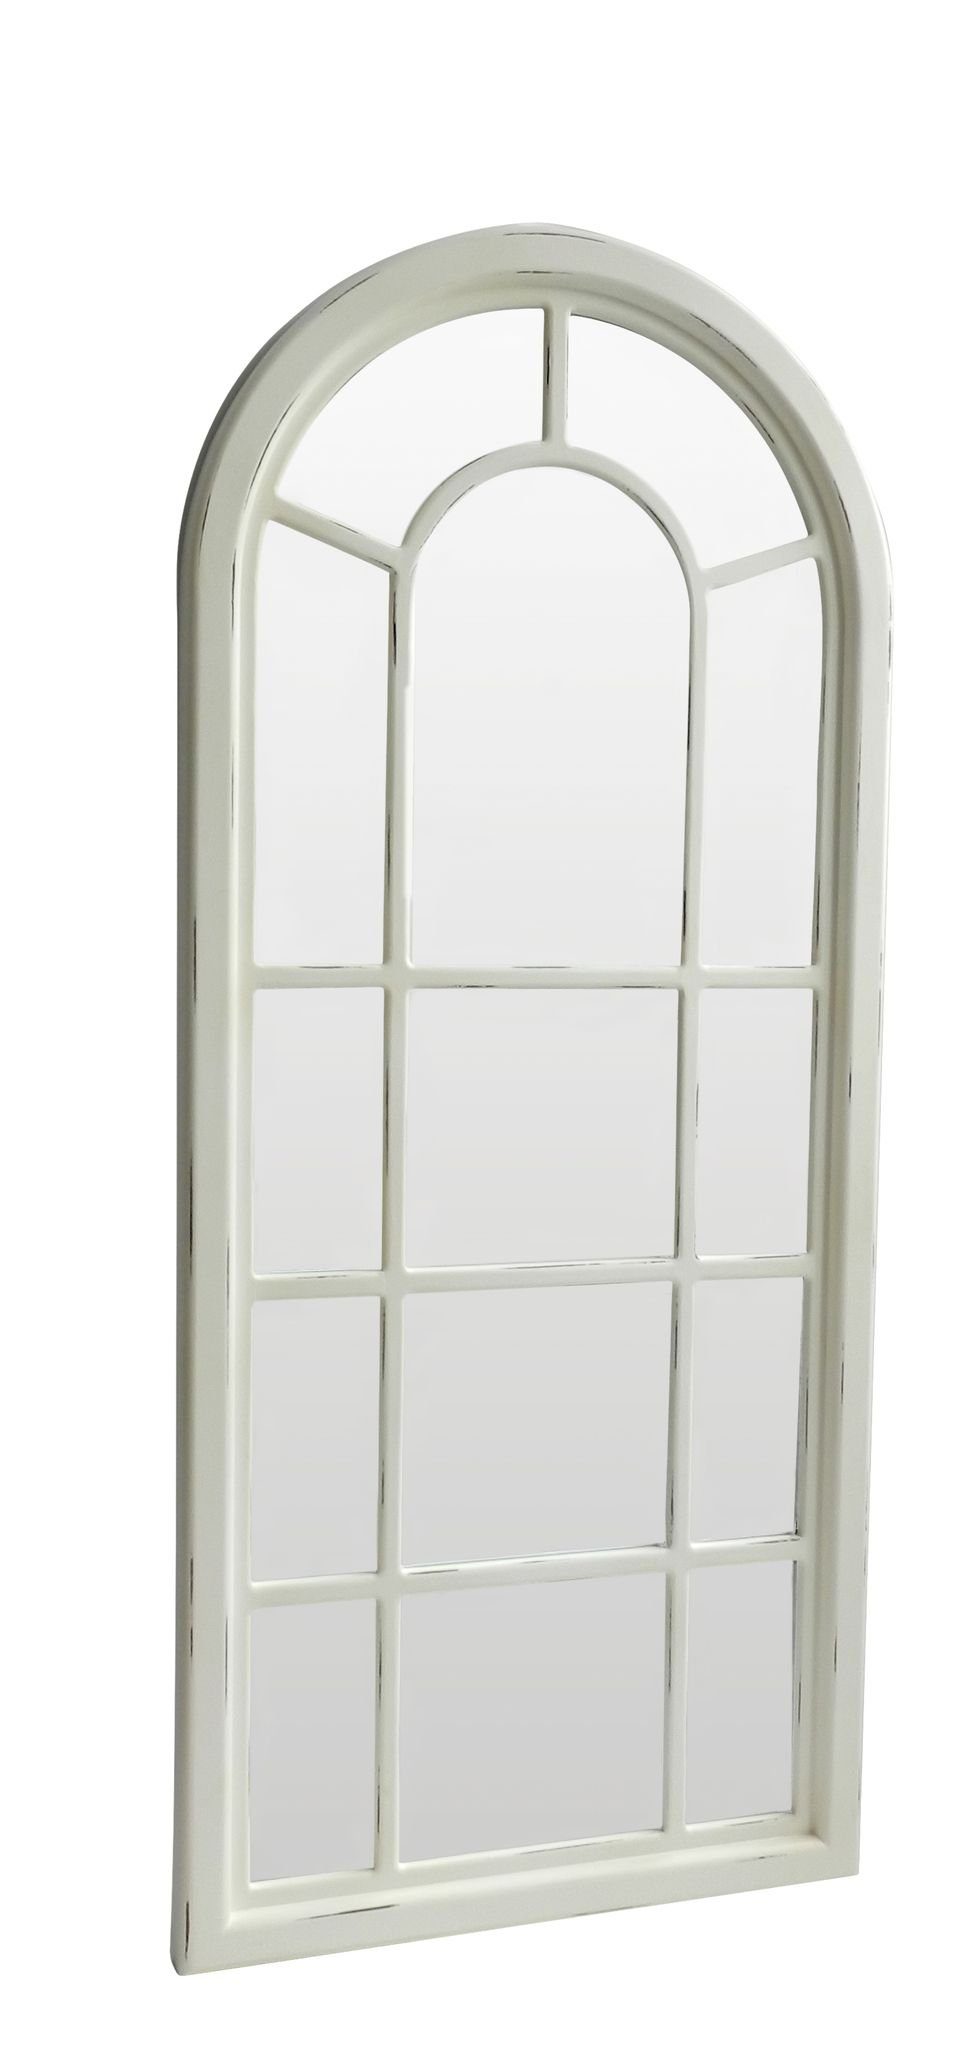 elbmöbel Wandspiegel Spiegel Wandspiegel weiß Landhaus Holz Fensteroptik,  Wandspiegel: Sprossen Fenster 70x160x4 cm weiß holz Landhausstil